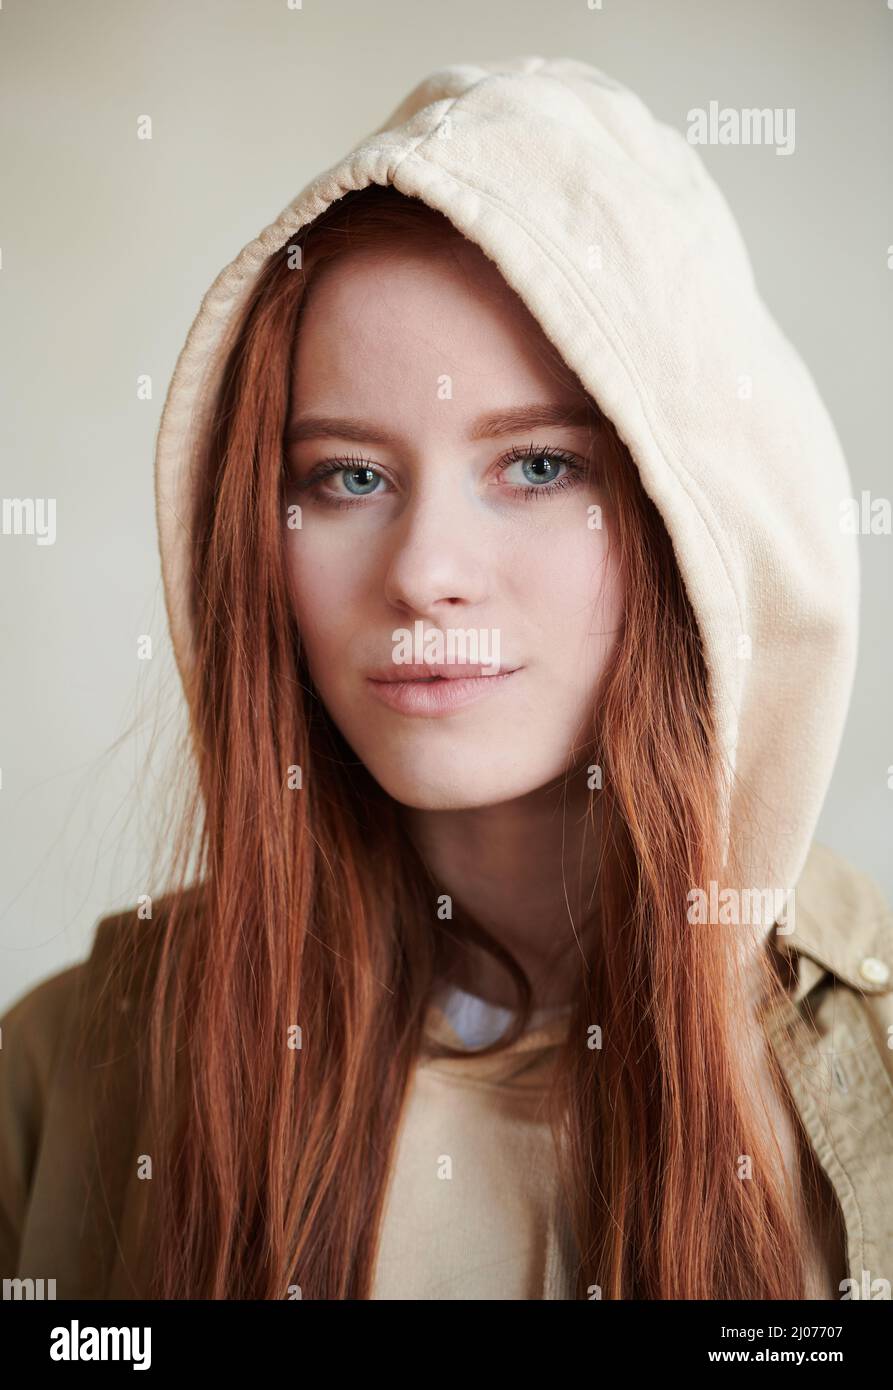 Vertikale Nahaufnahme der attraktiven jungen kaukasischen Frau mit roten Haaren und grauen Augen, die eine Kapuze tragen und die Kamera betrachten Stockfoto